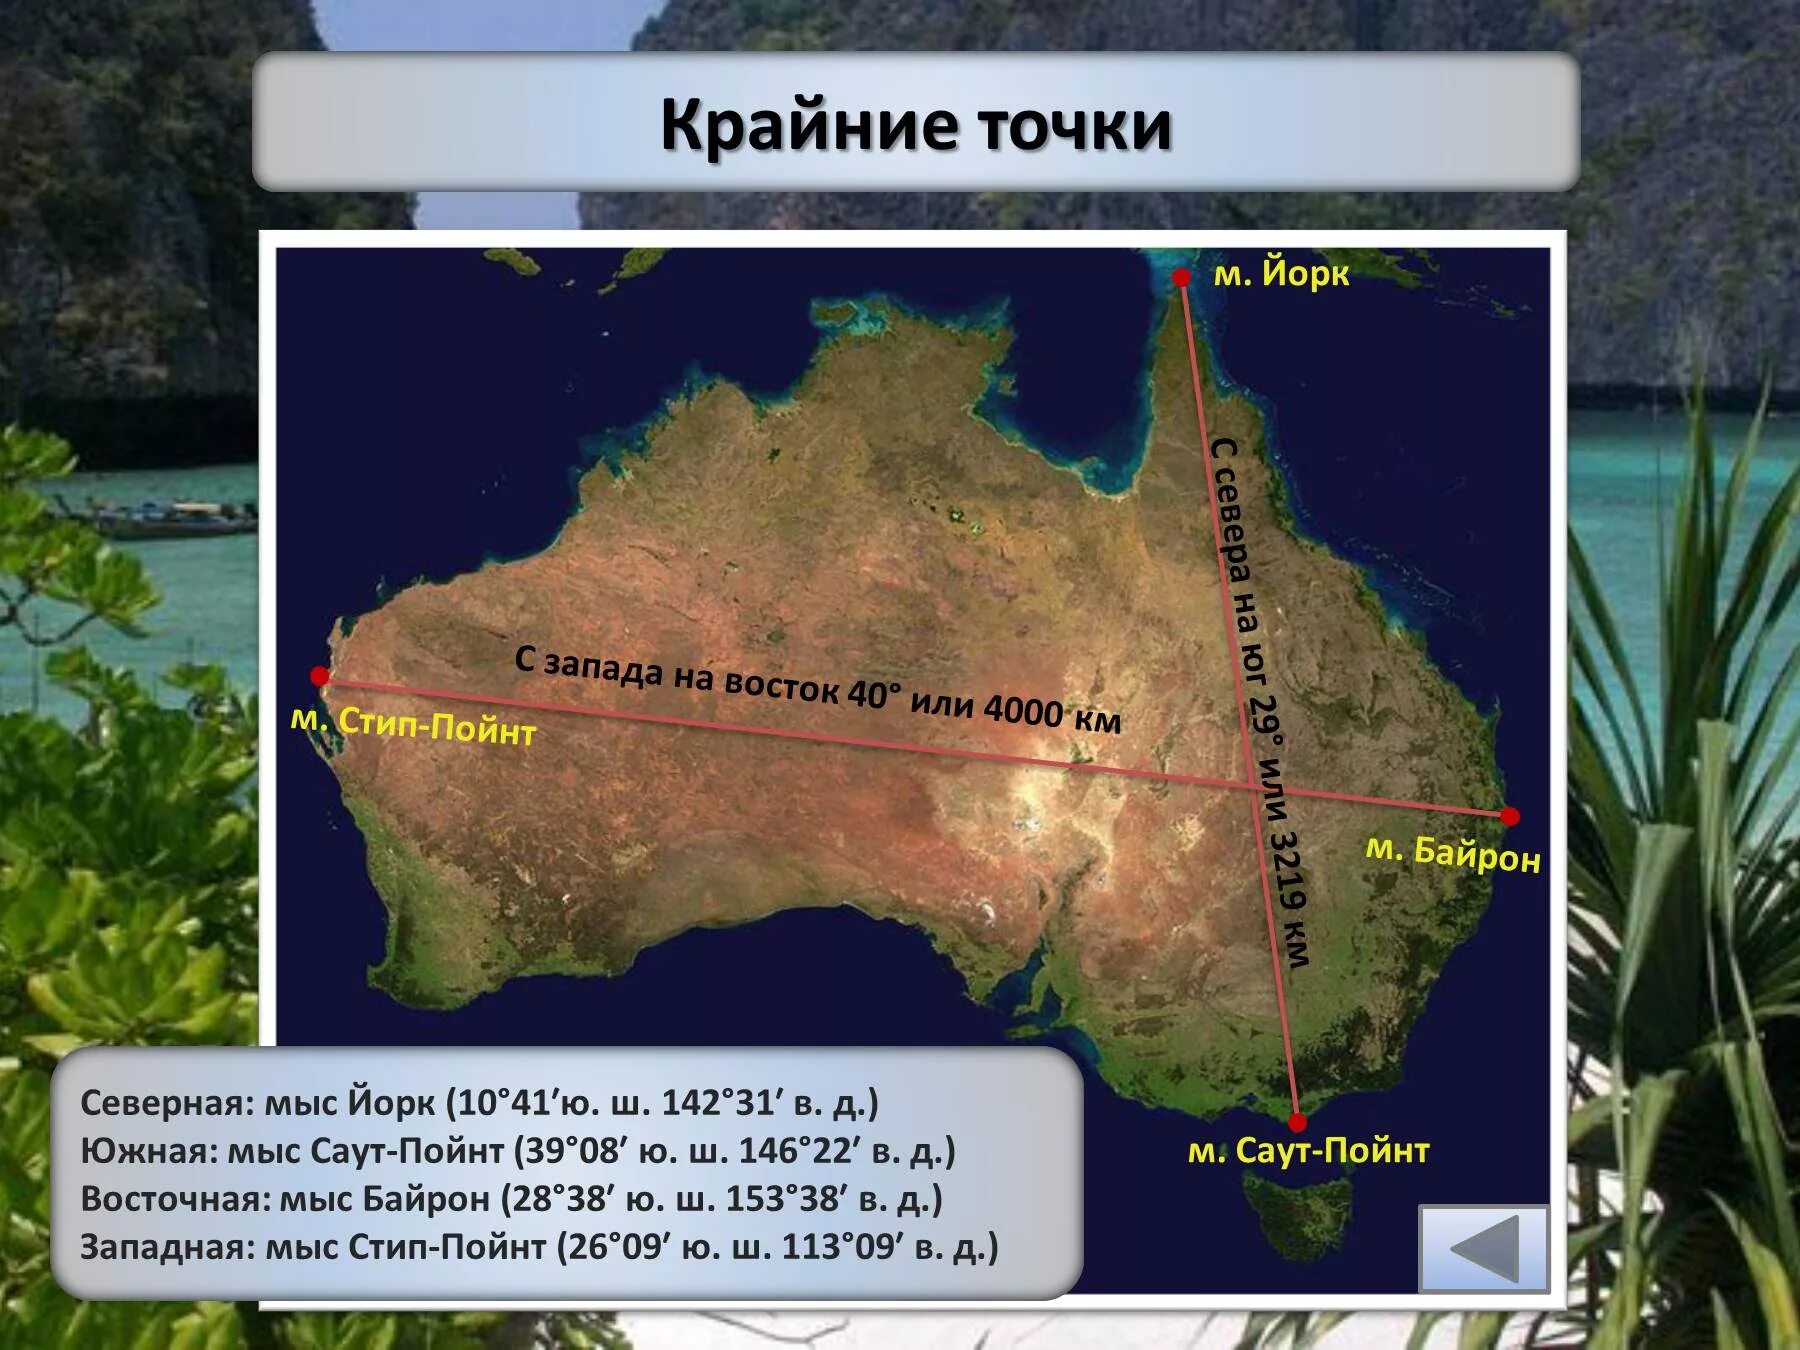 Крайние точки материка Австралия и их координаты. Крайние точки Австралии и их координаты на карте. Крайние точки Австралии на карте. Крайние точки Австралии и их географические координаты.